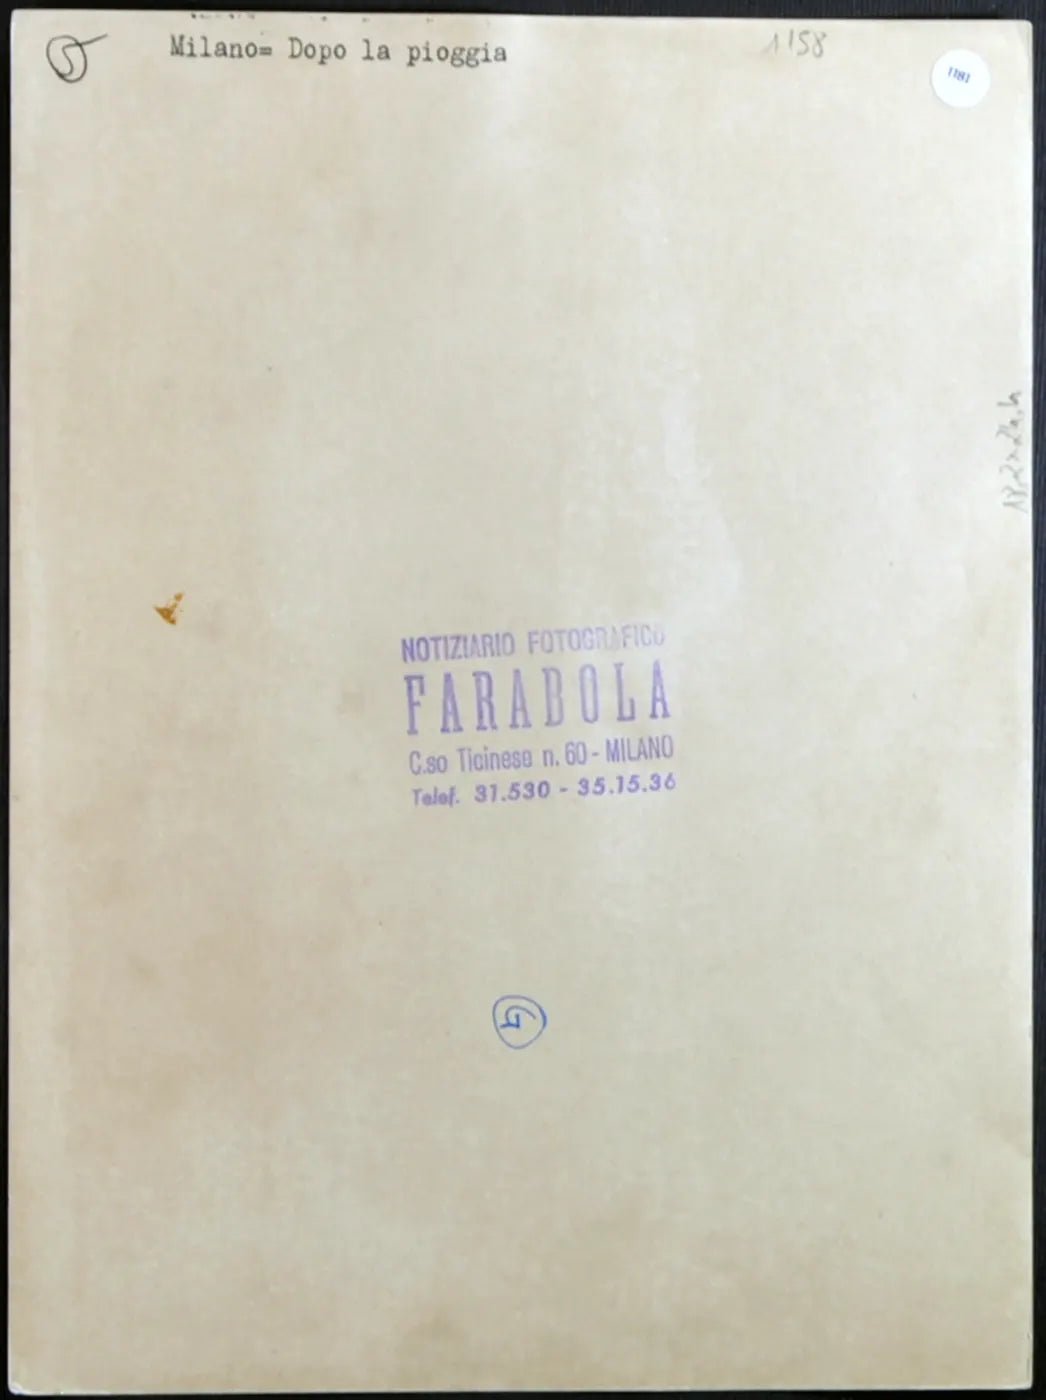 Milano dopo la pioggia anni 60 Ft 1181 - Stampa 24x18 cm - Farabola Stampa ai sali d'argento